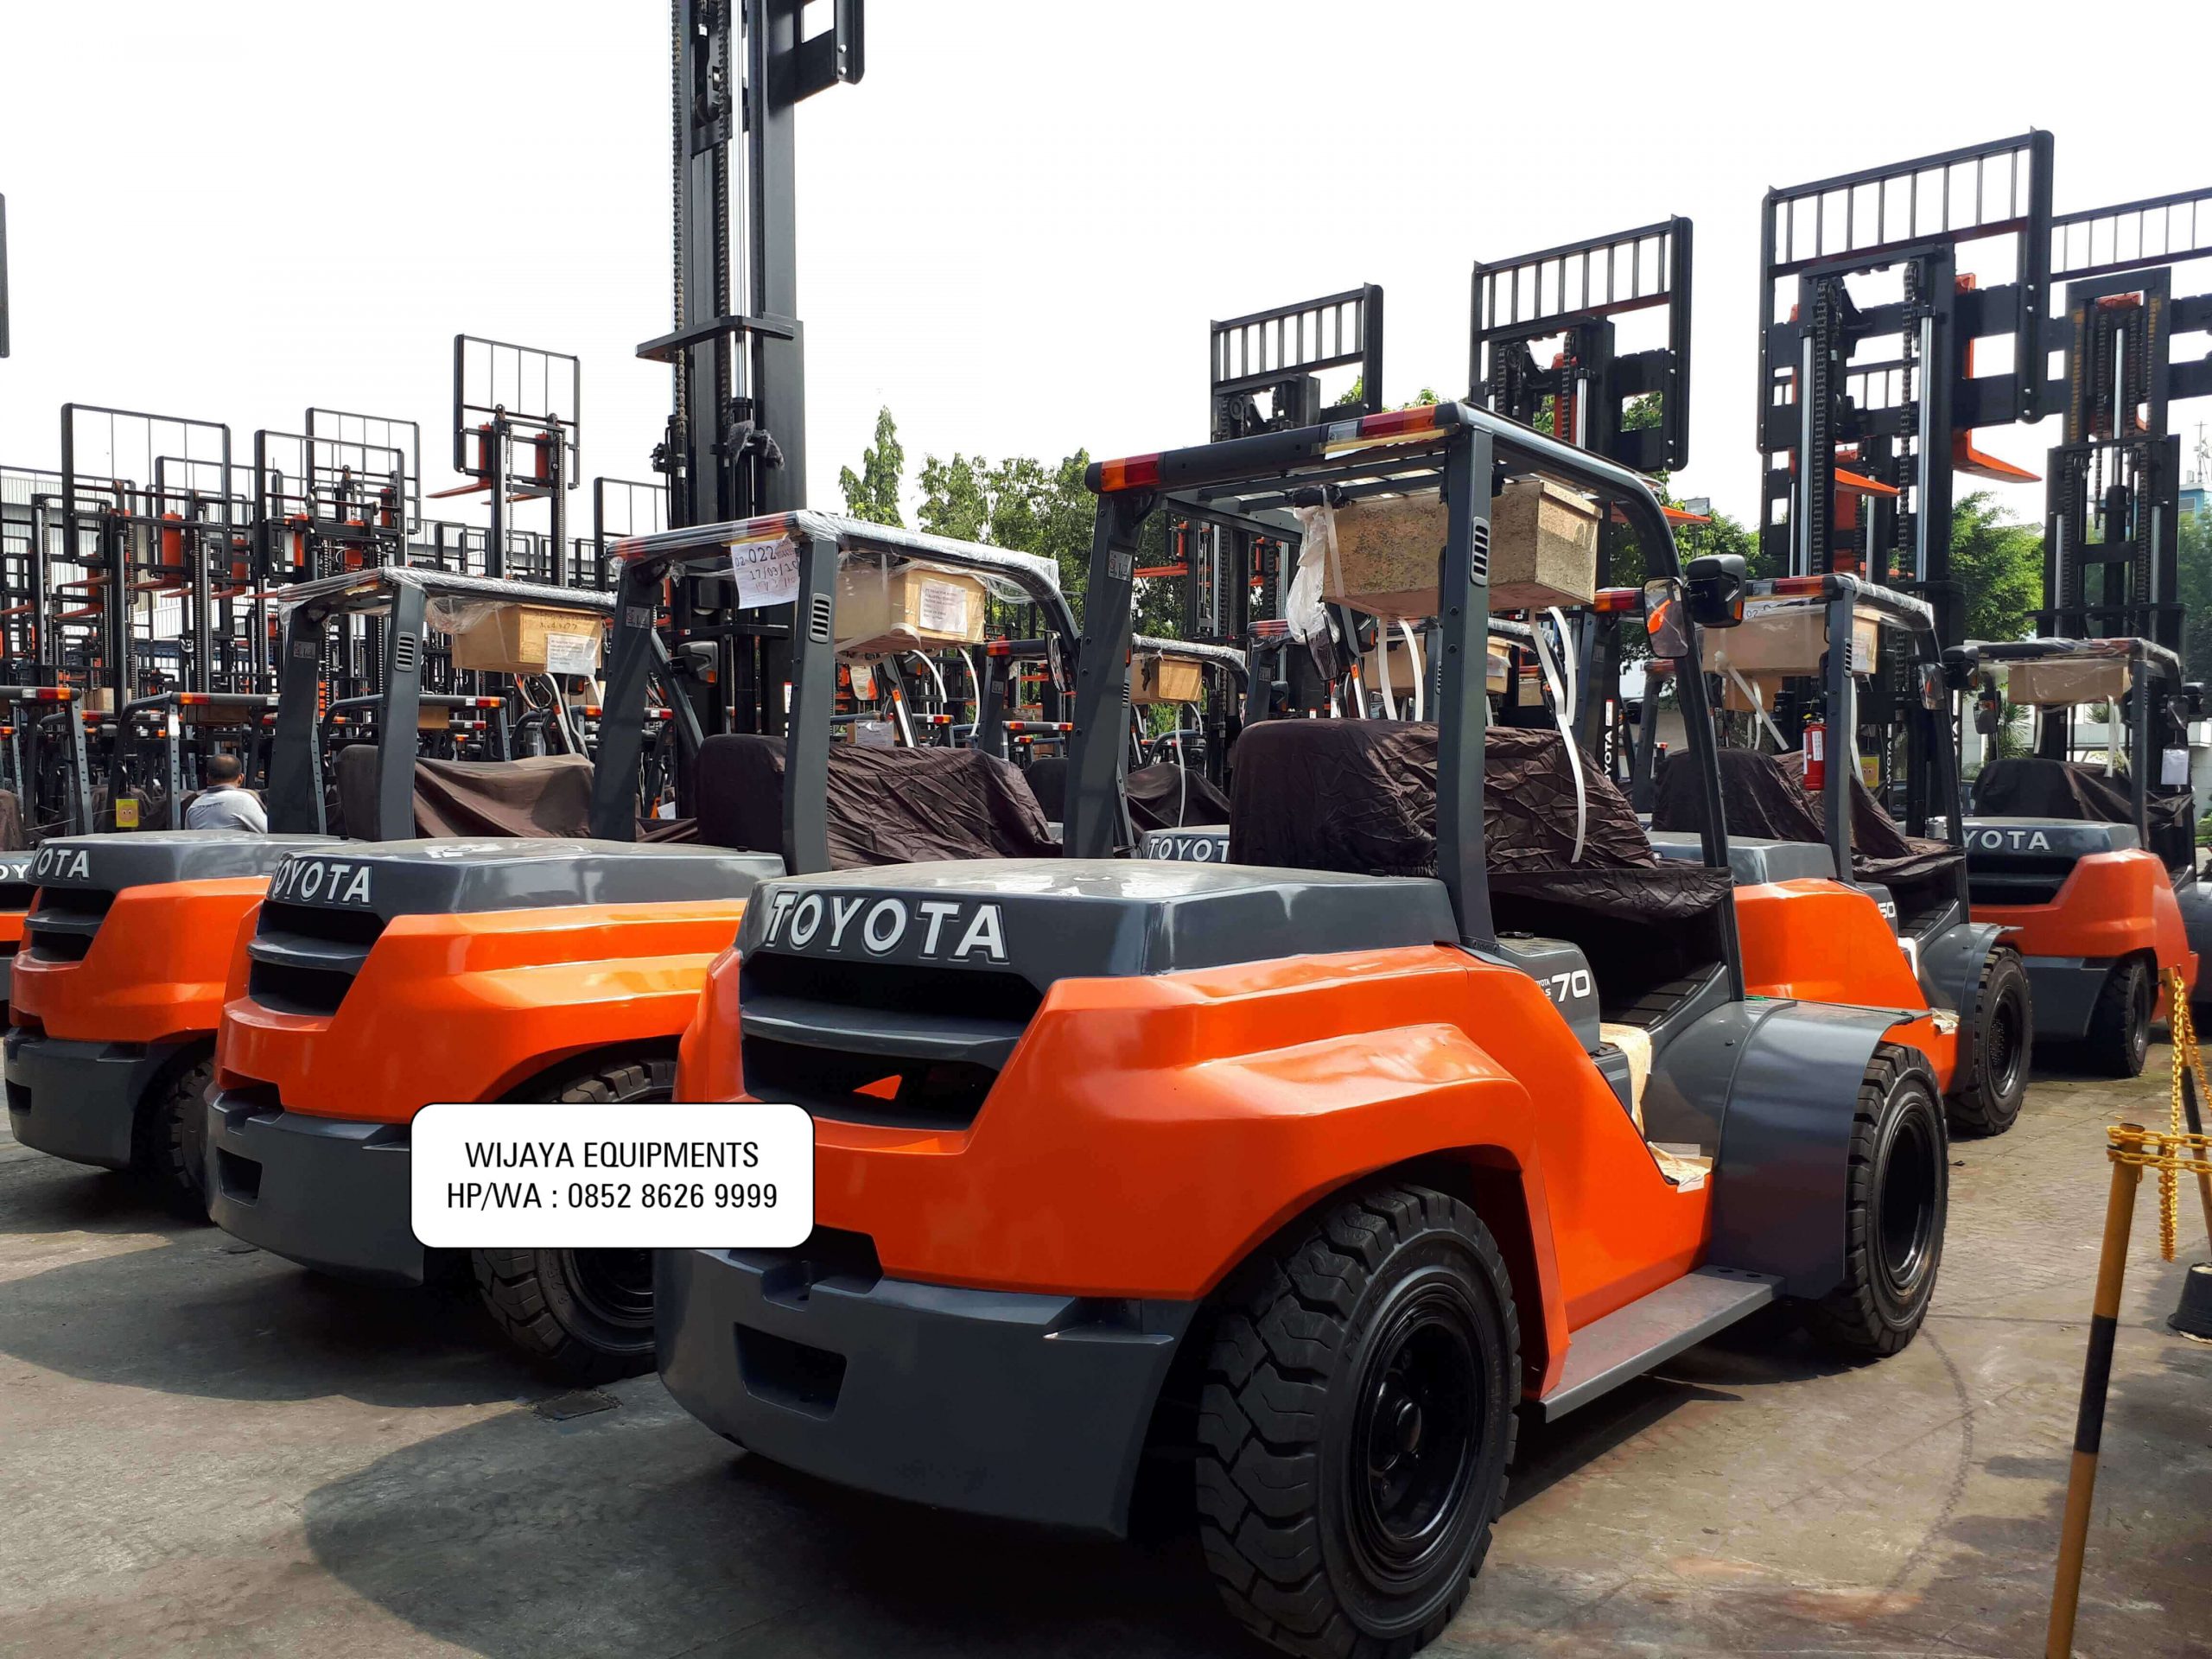 Harga Forklift Toyota Terbaru 2020 Wijaya Equipments